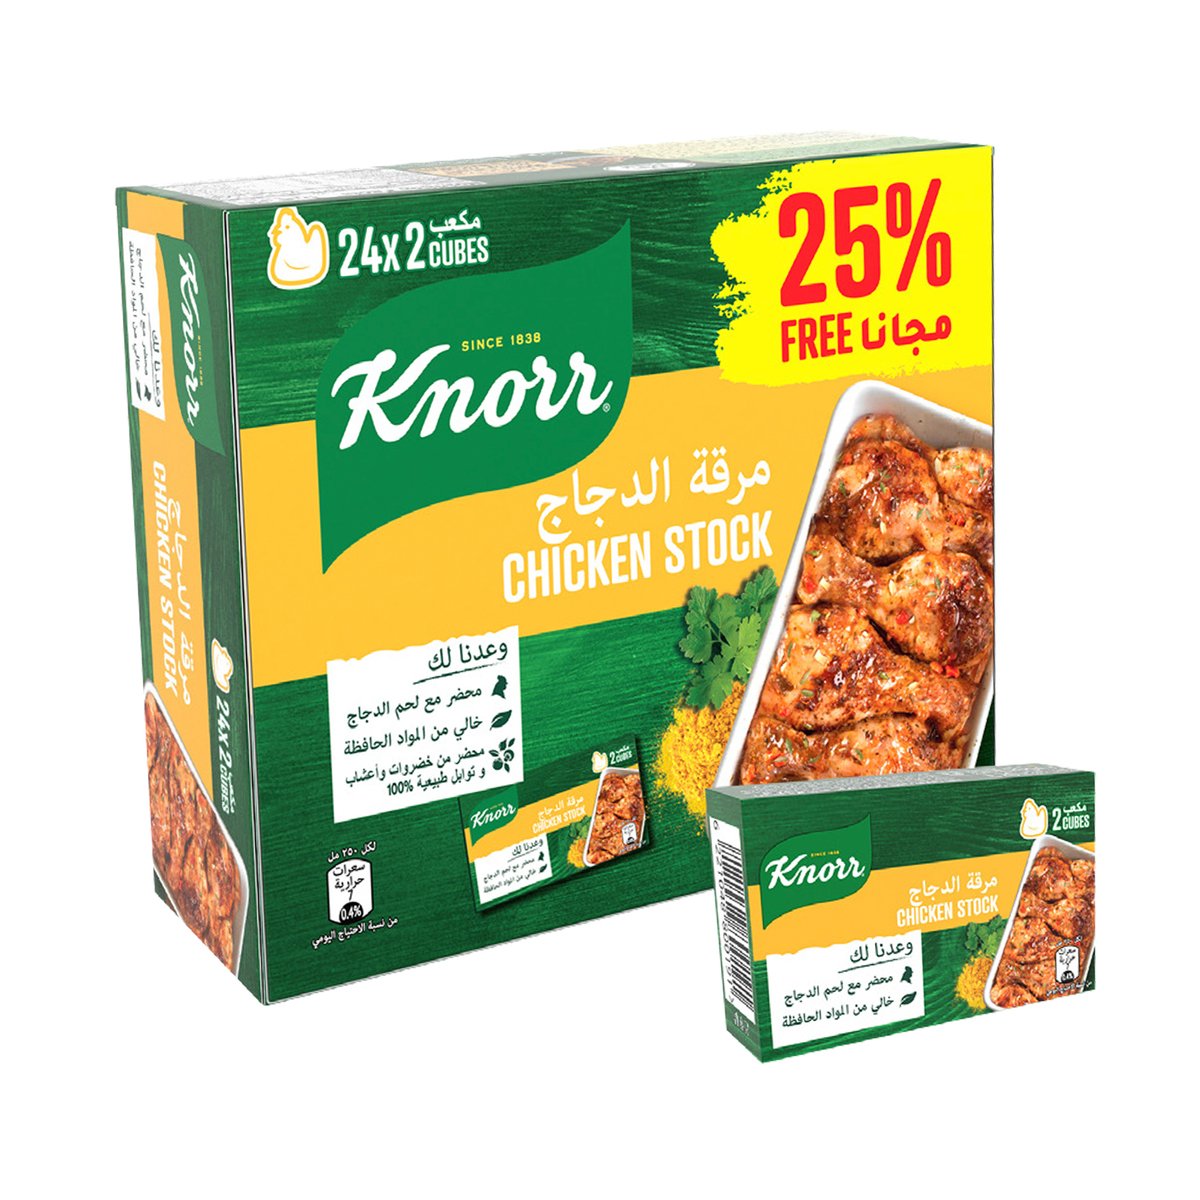 Buy Knorr Chicken Stock 24 x 20 g Online at Best Price | Unilever Product | Lulu UAE in UAE